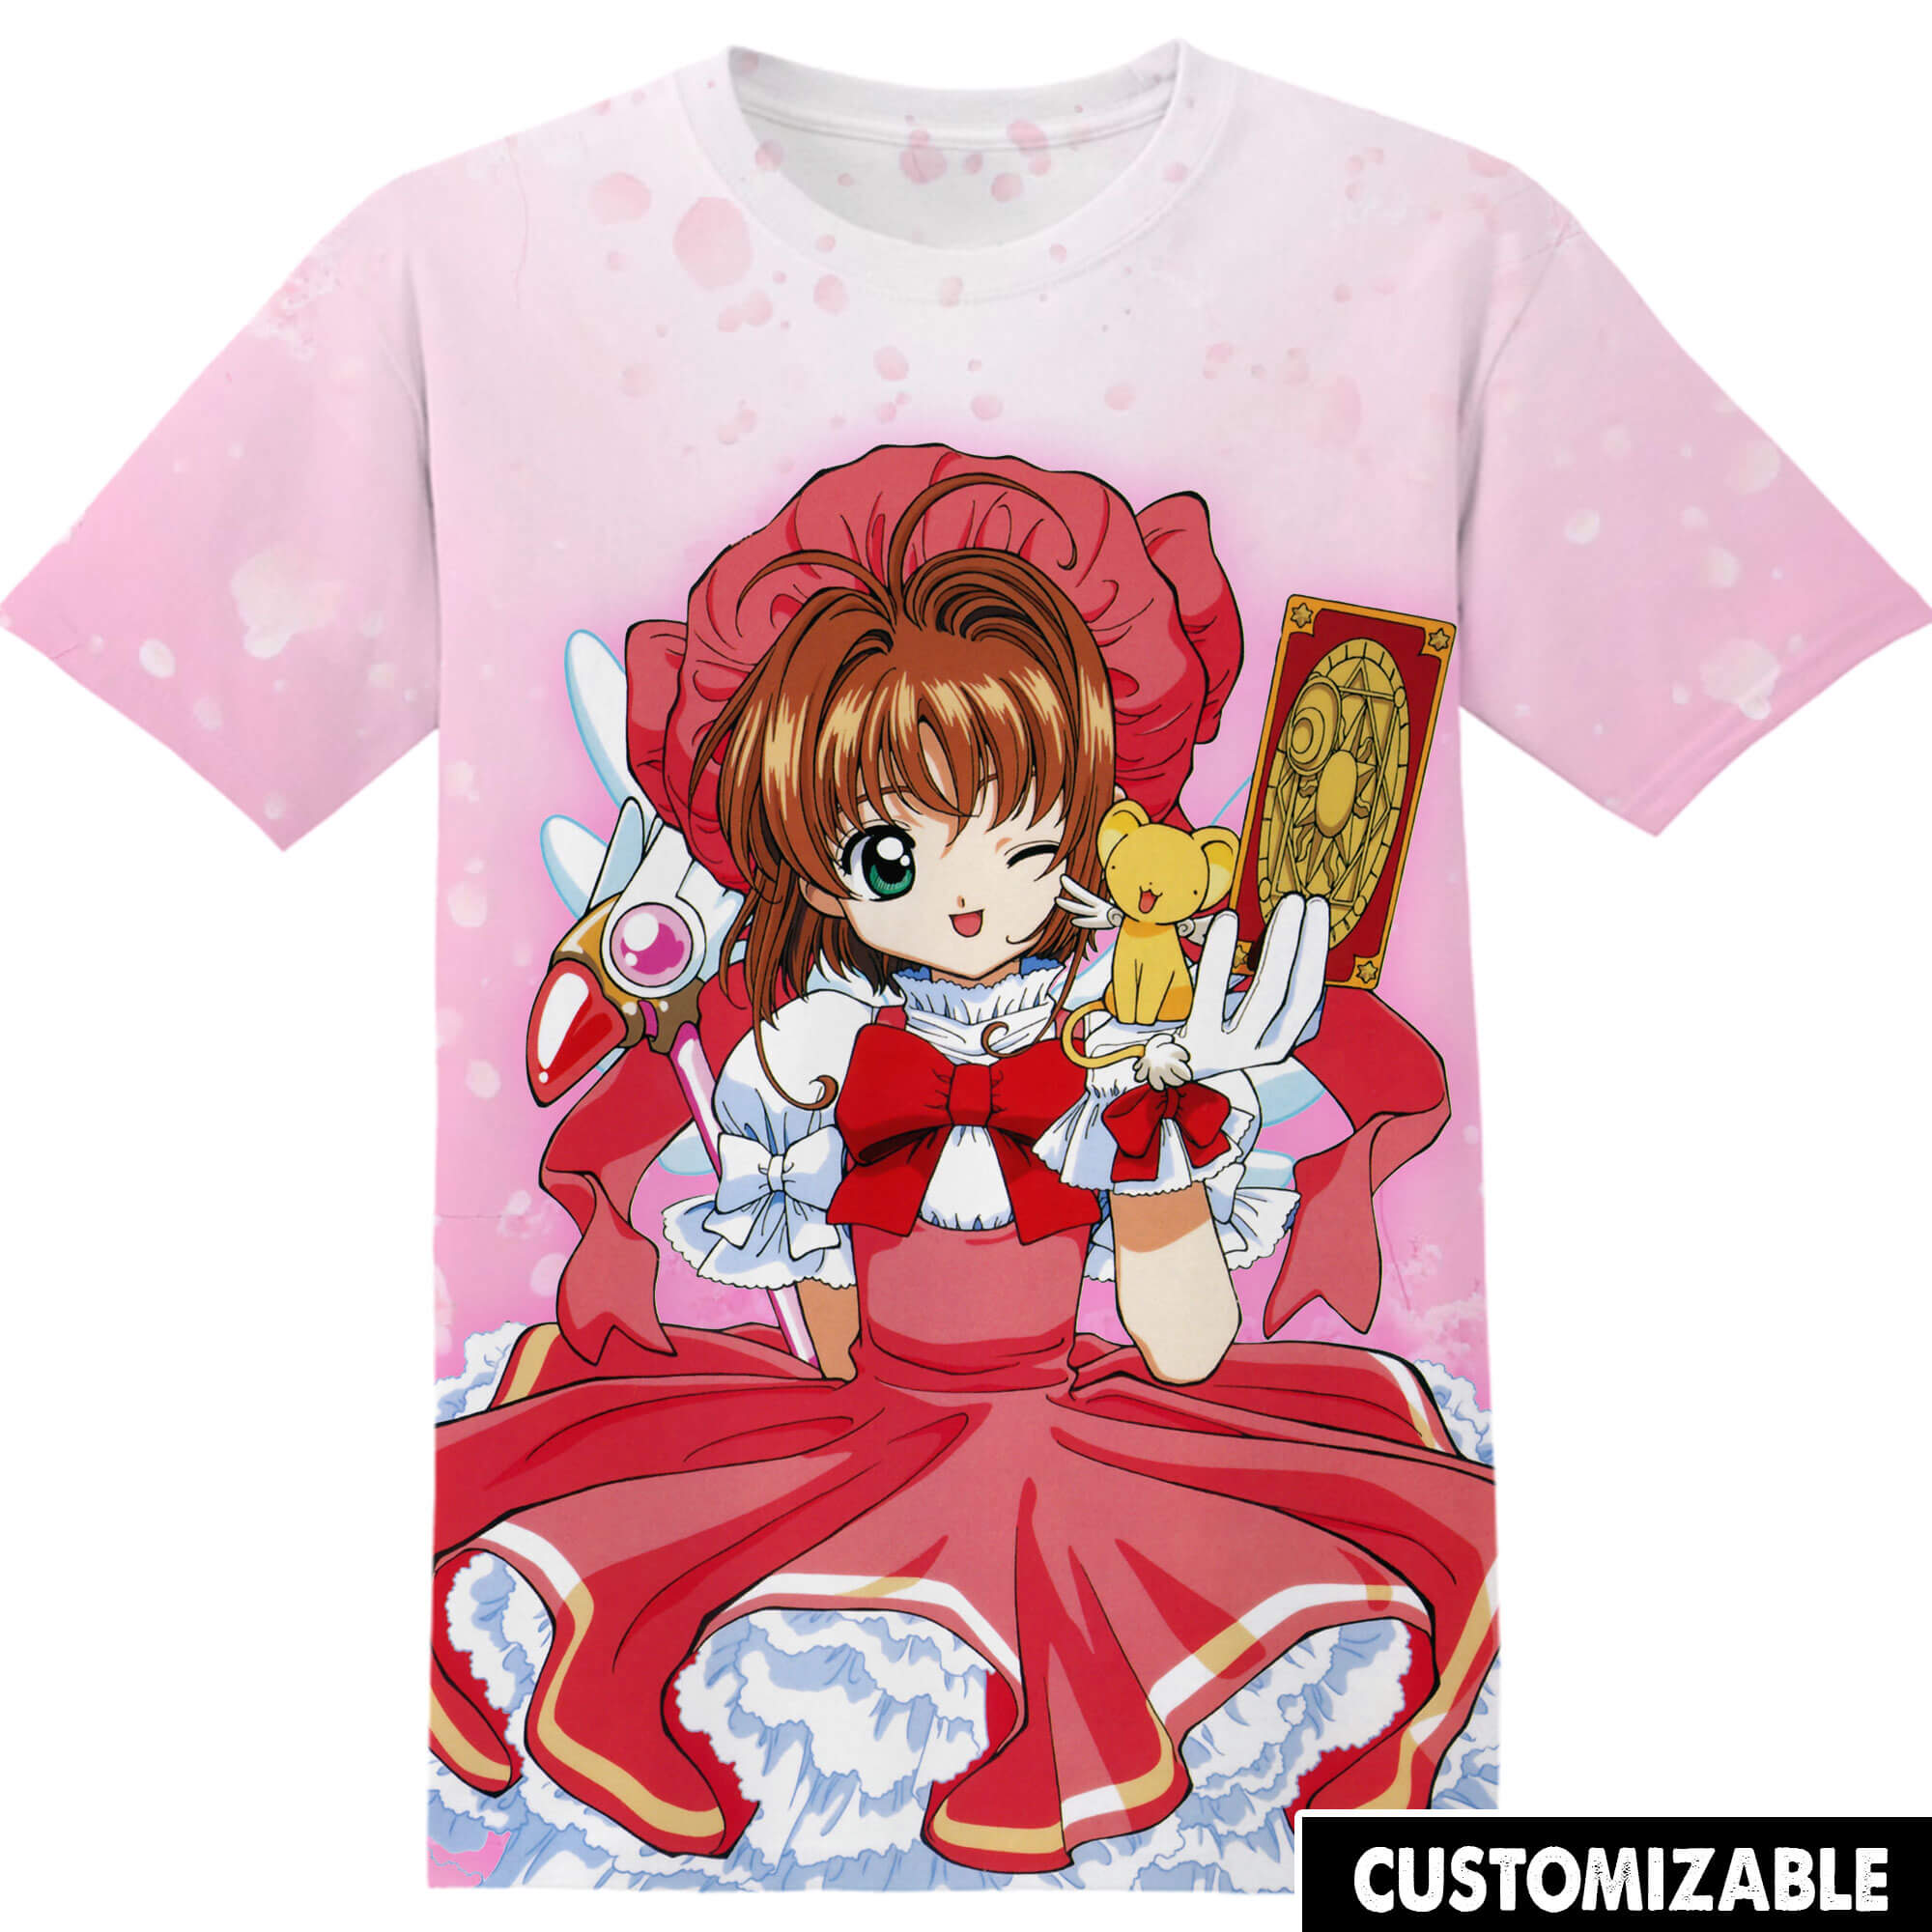 Customized Cardcaptor Sakura Kawaii Shirt